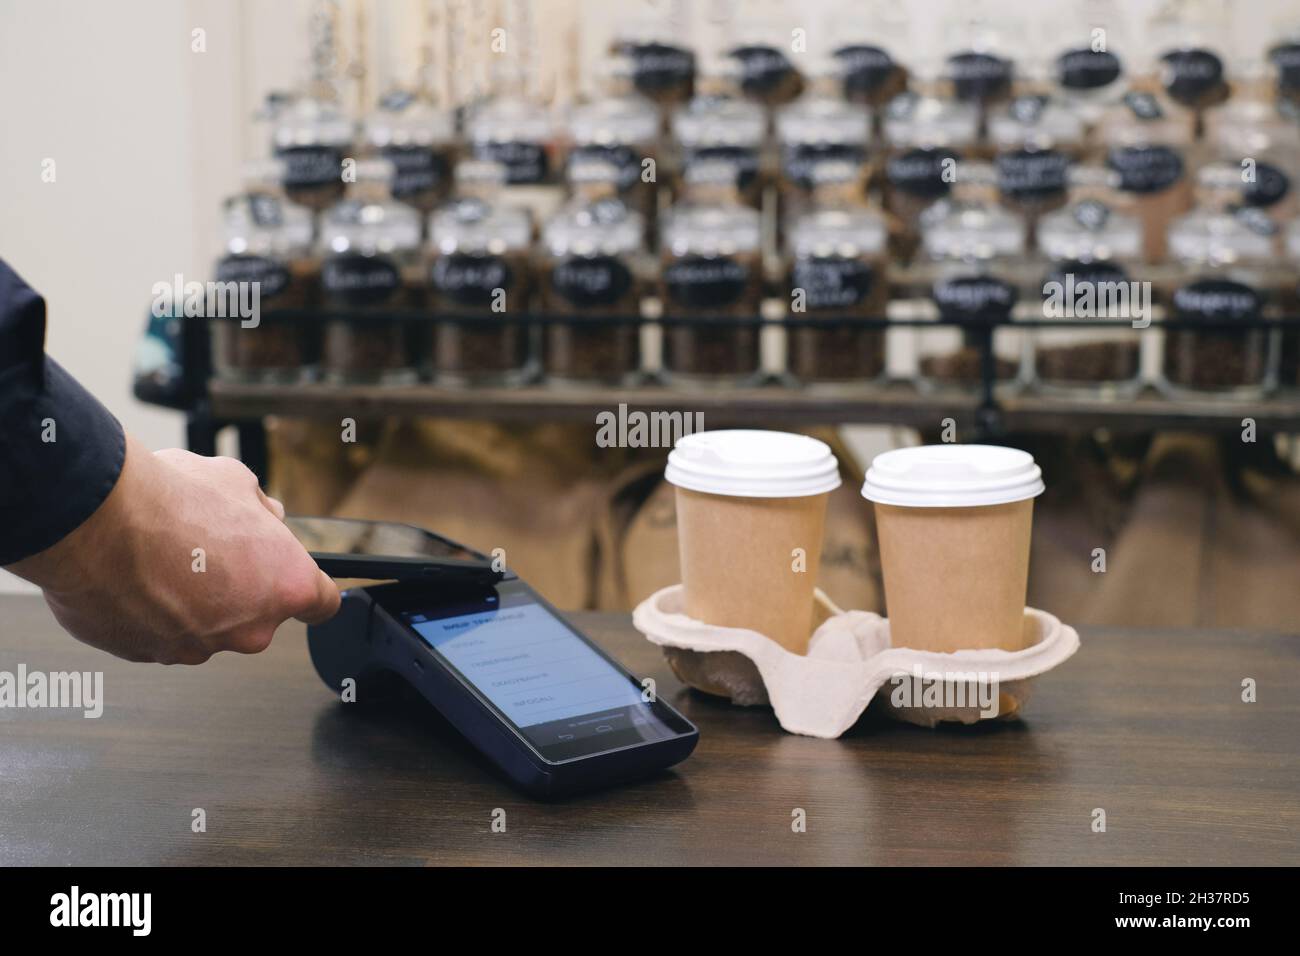 Cliente che utilizza lo smartphone e la tecnologia nfs per pagare il barista per l'acquisto con il telefono in un bar per il caffè. Transazione sicura Foto Stock